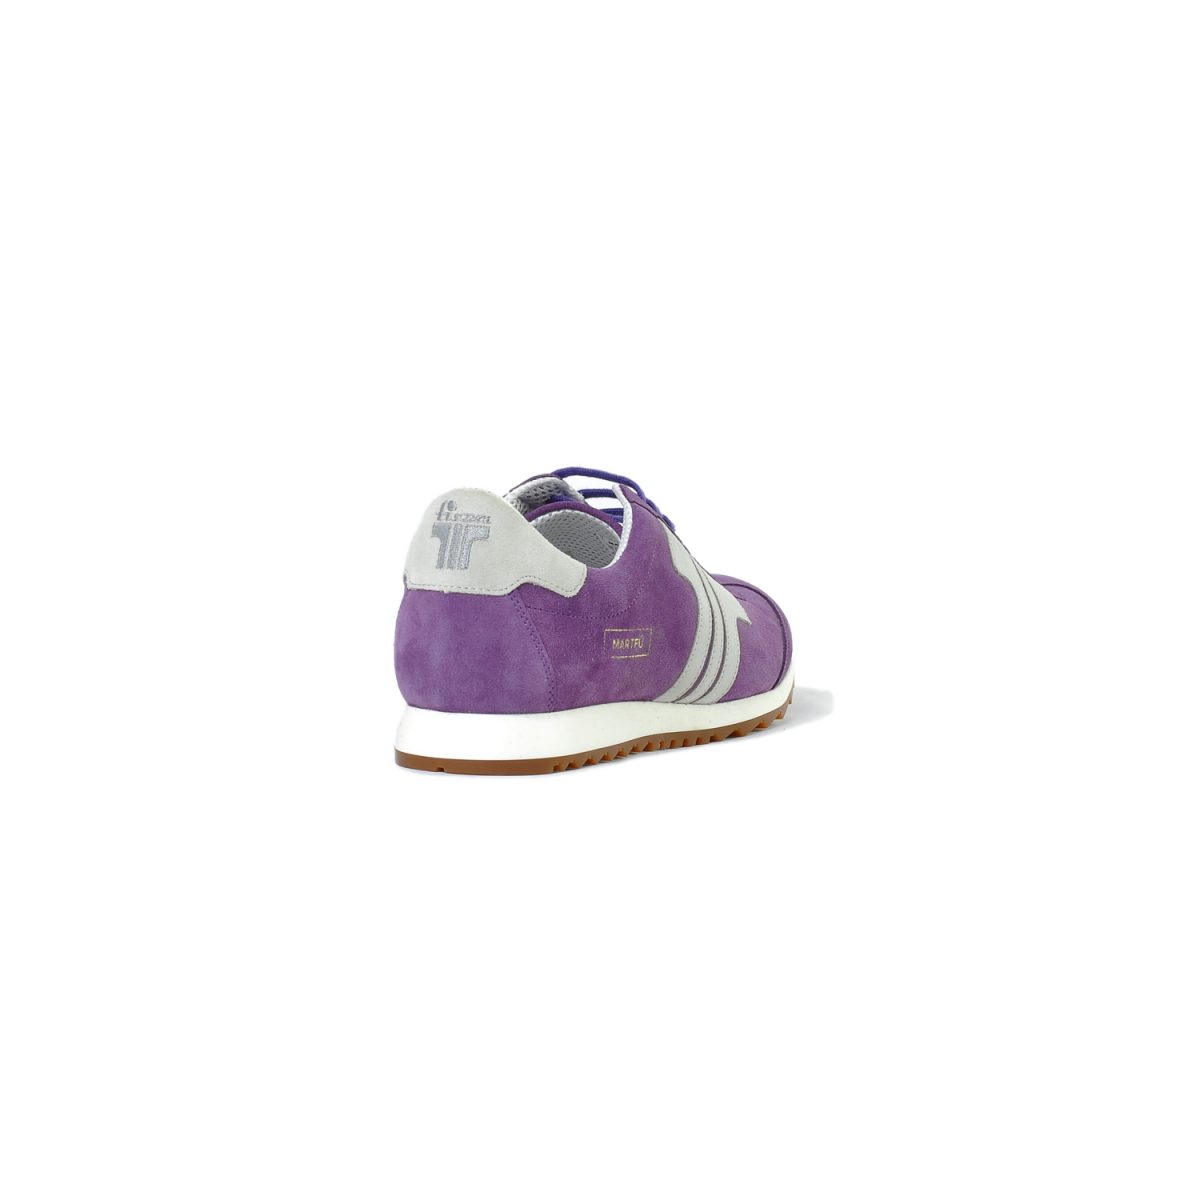 Tisza shoes - Martfű - Purple-nude